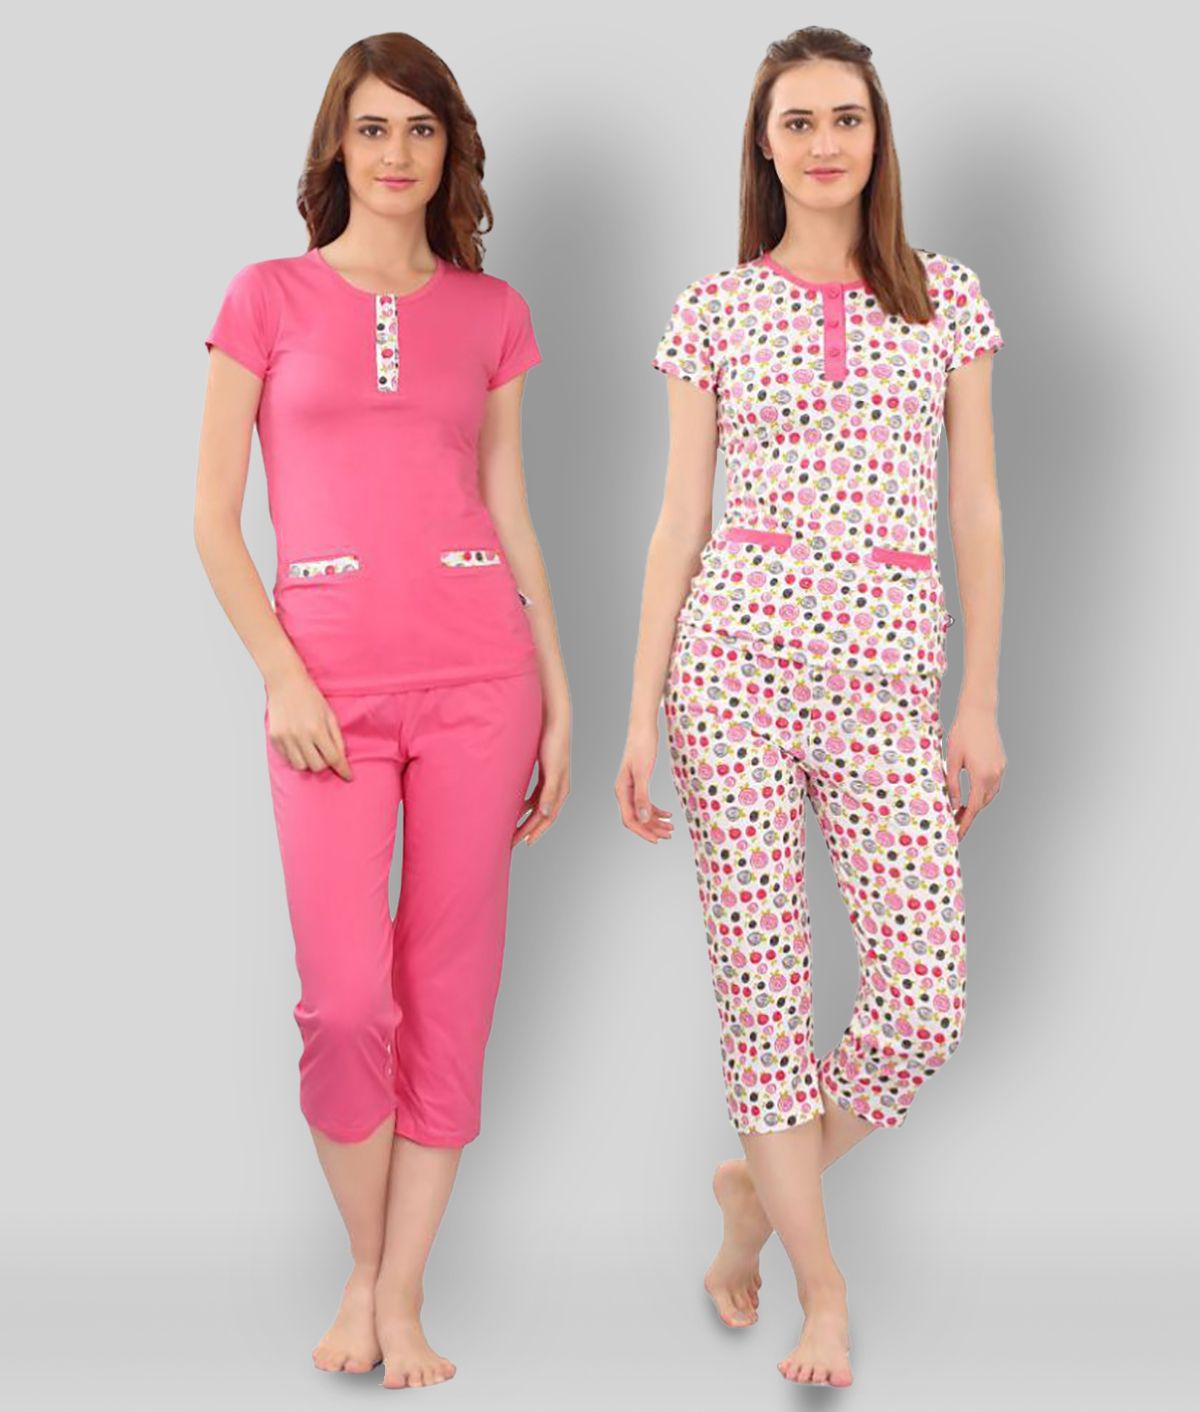     			Zebu - Multicolor Cotton Women's Nightwear Nightsuit Sets ( Pack of 2 )